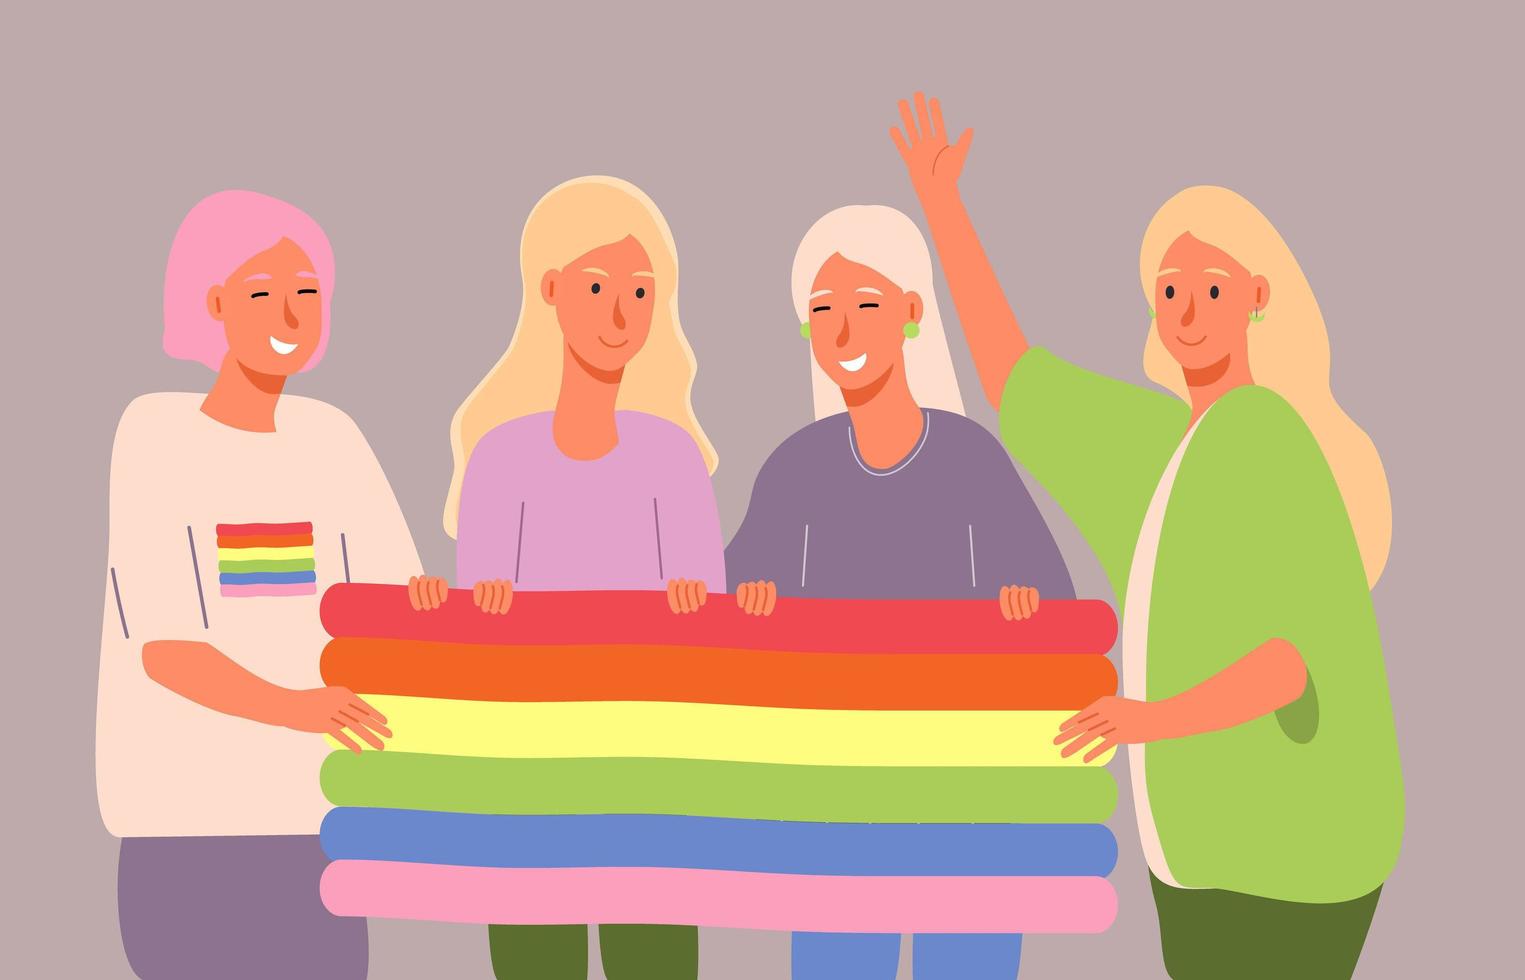 mes de historia lgbt en octubre, semana, día. lesbianas, chicas bisexuales sosteniendo la bandera del arco iris y riendo. vector